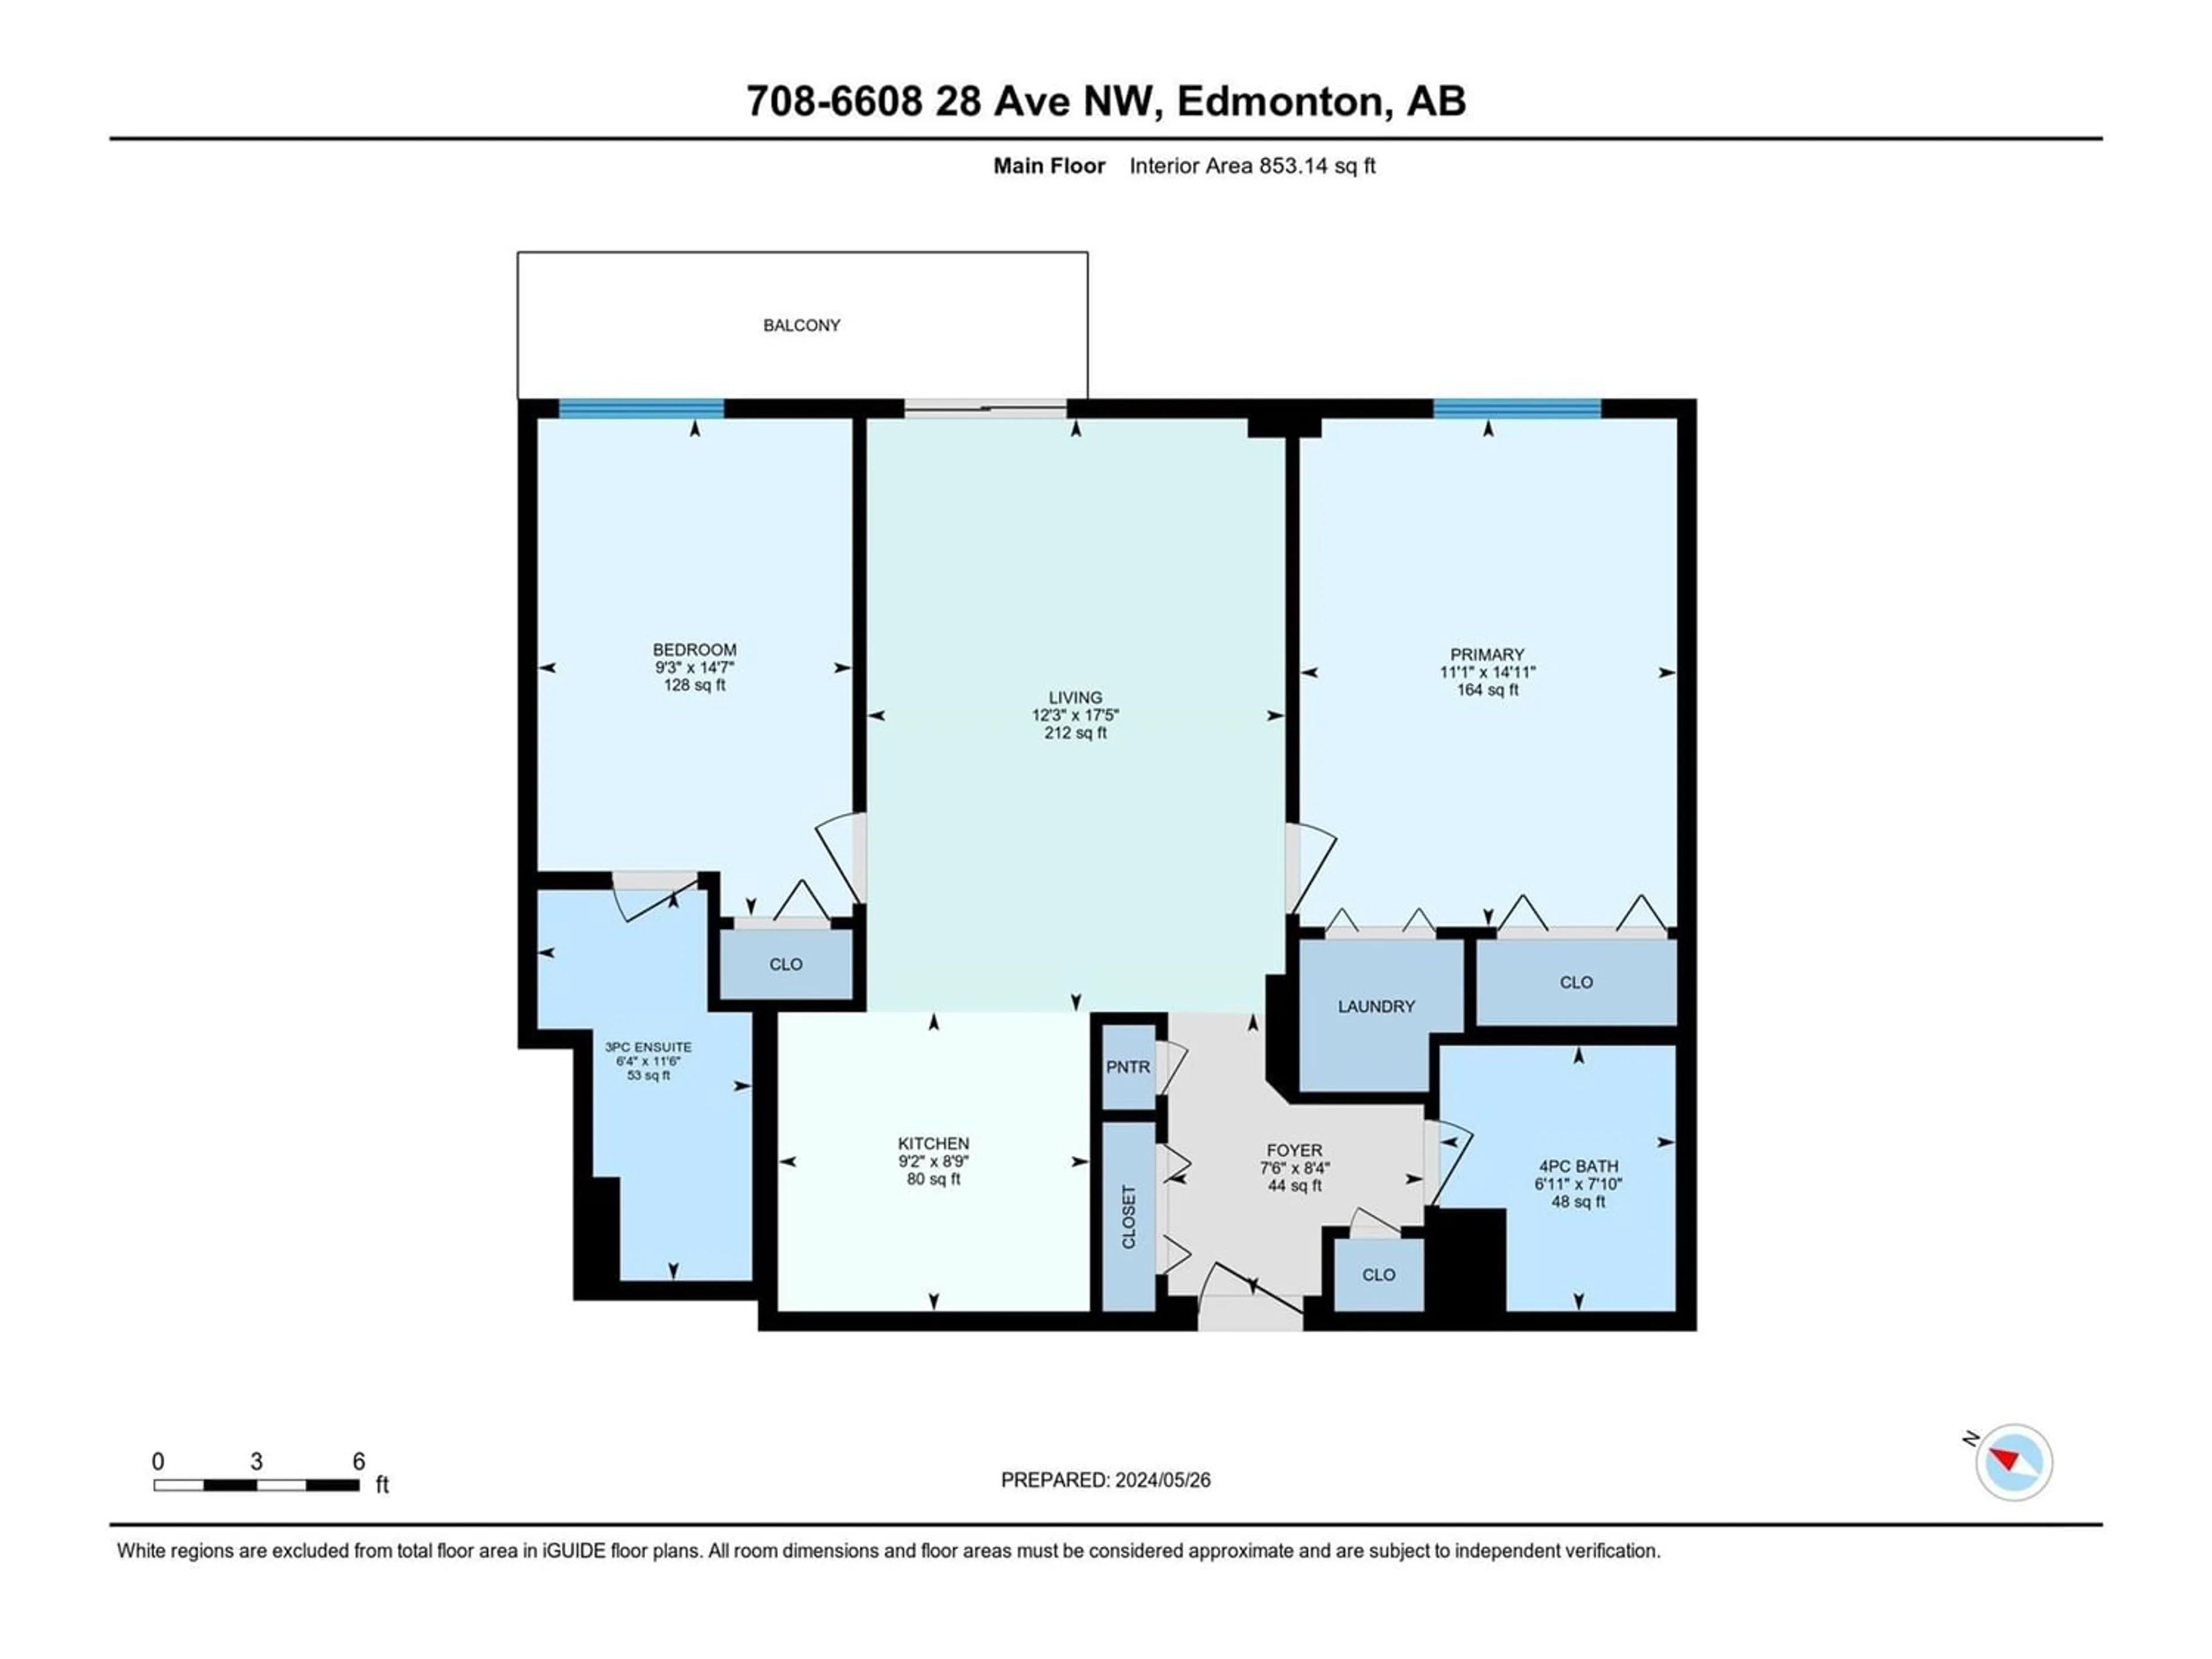 Floor plan for #708 6608 28 AV NW, Edmonton Alberta T6K2R1